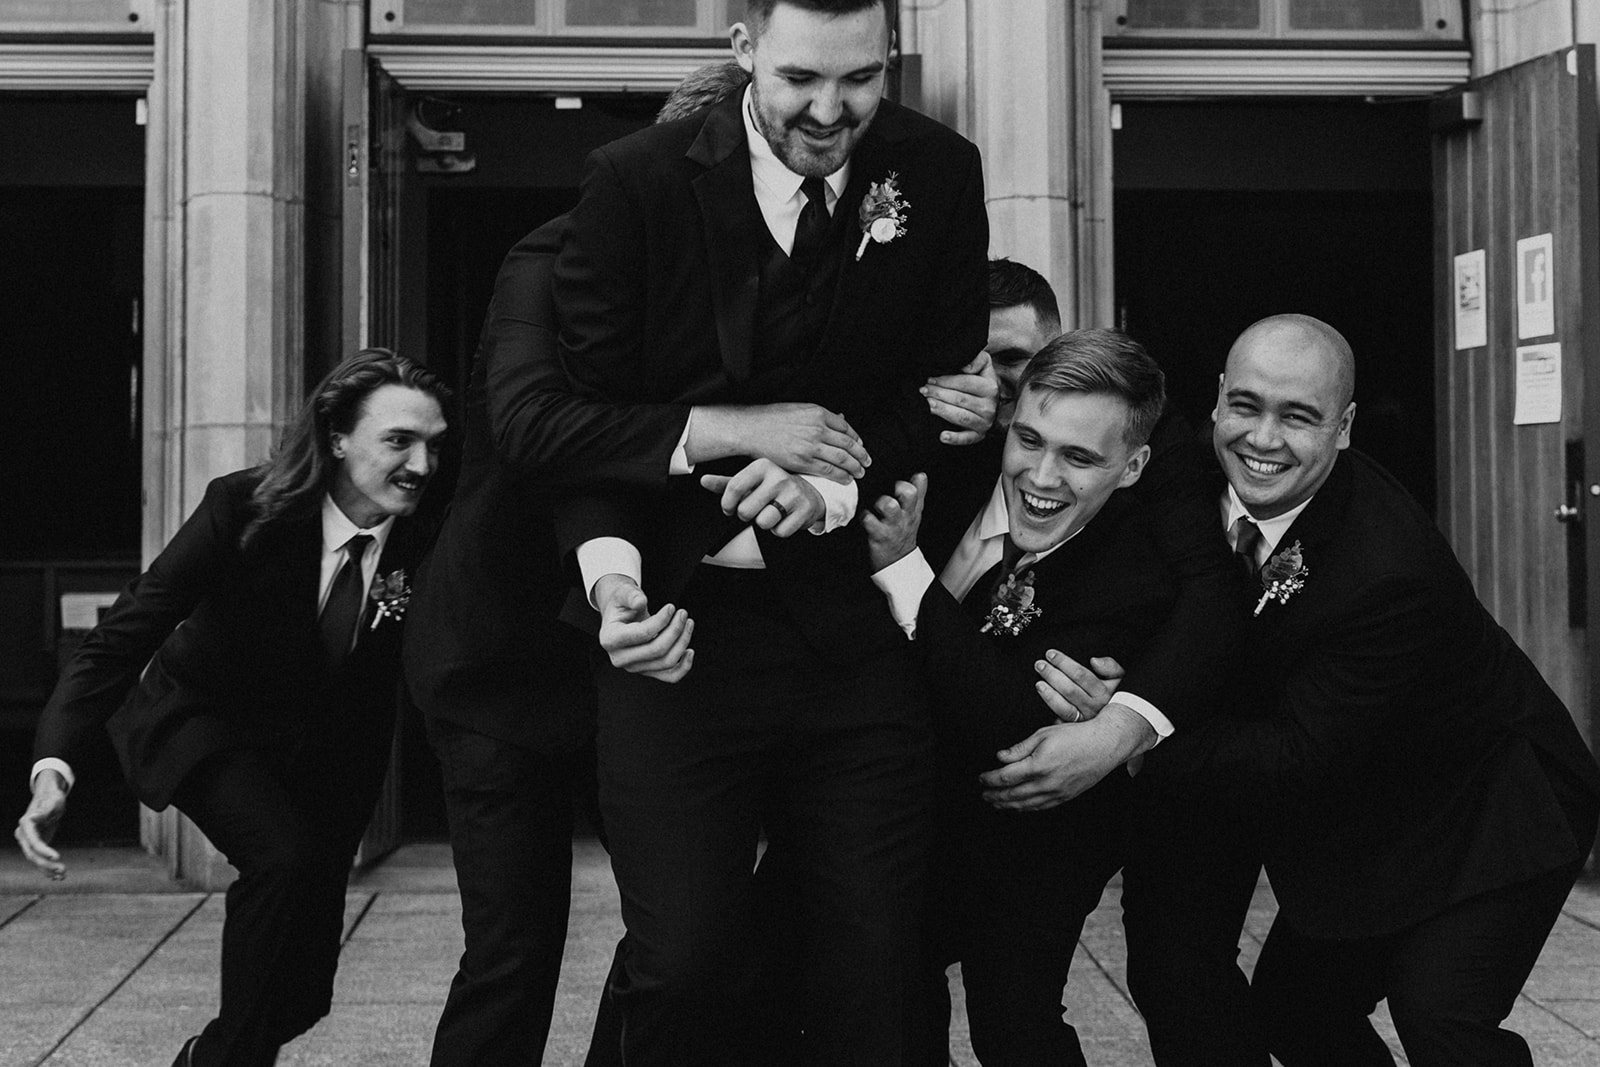 Groom being lifted by his groomsmen